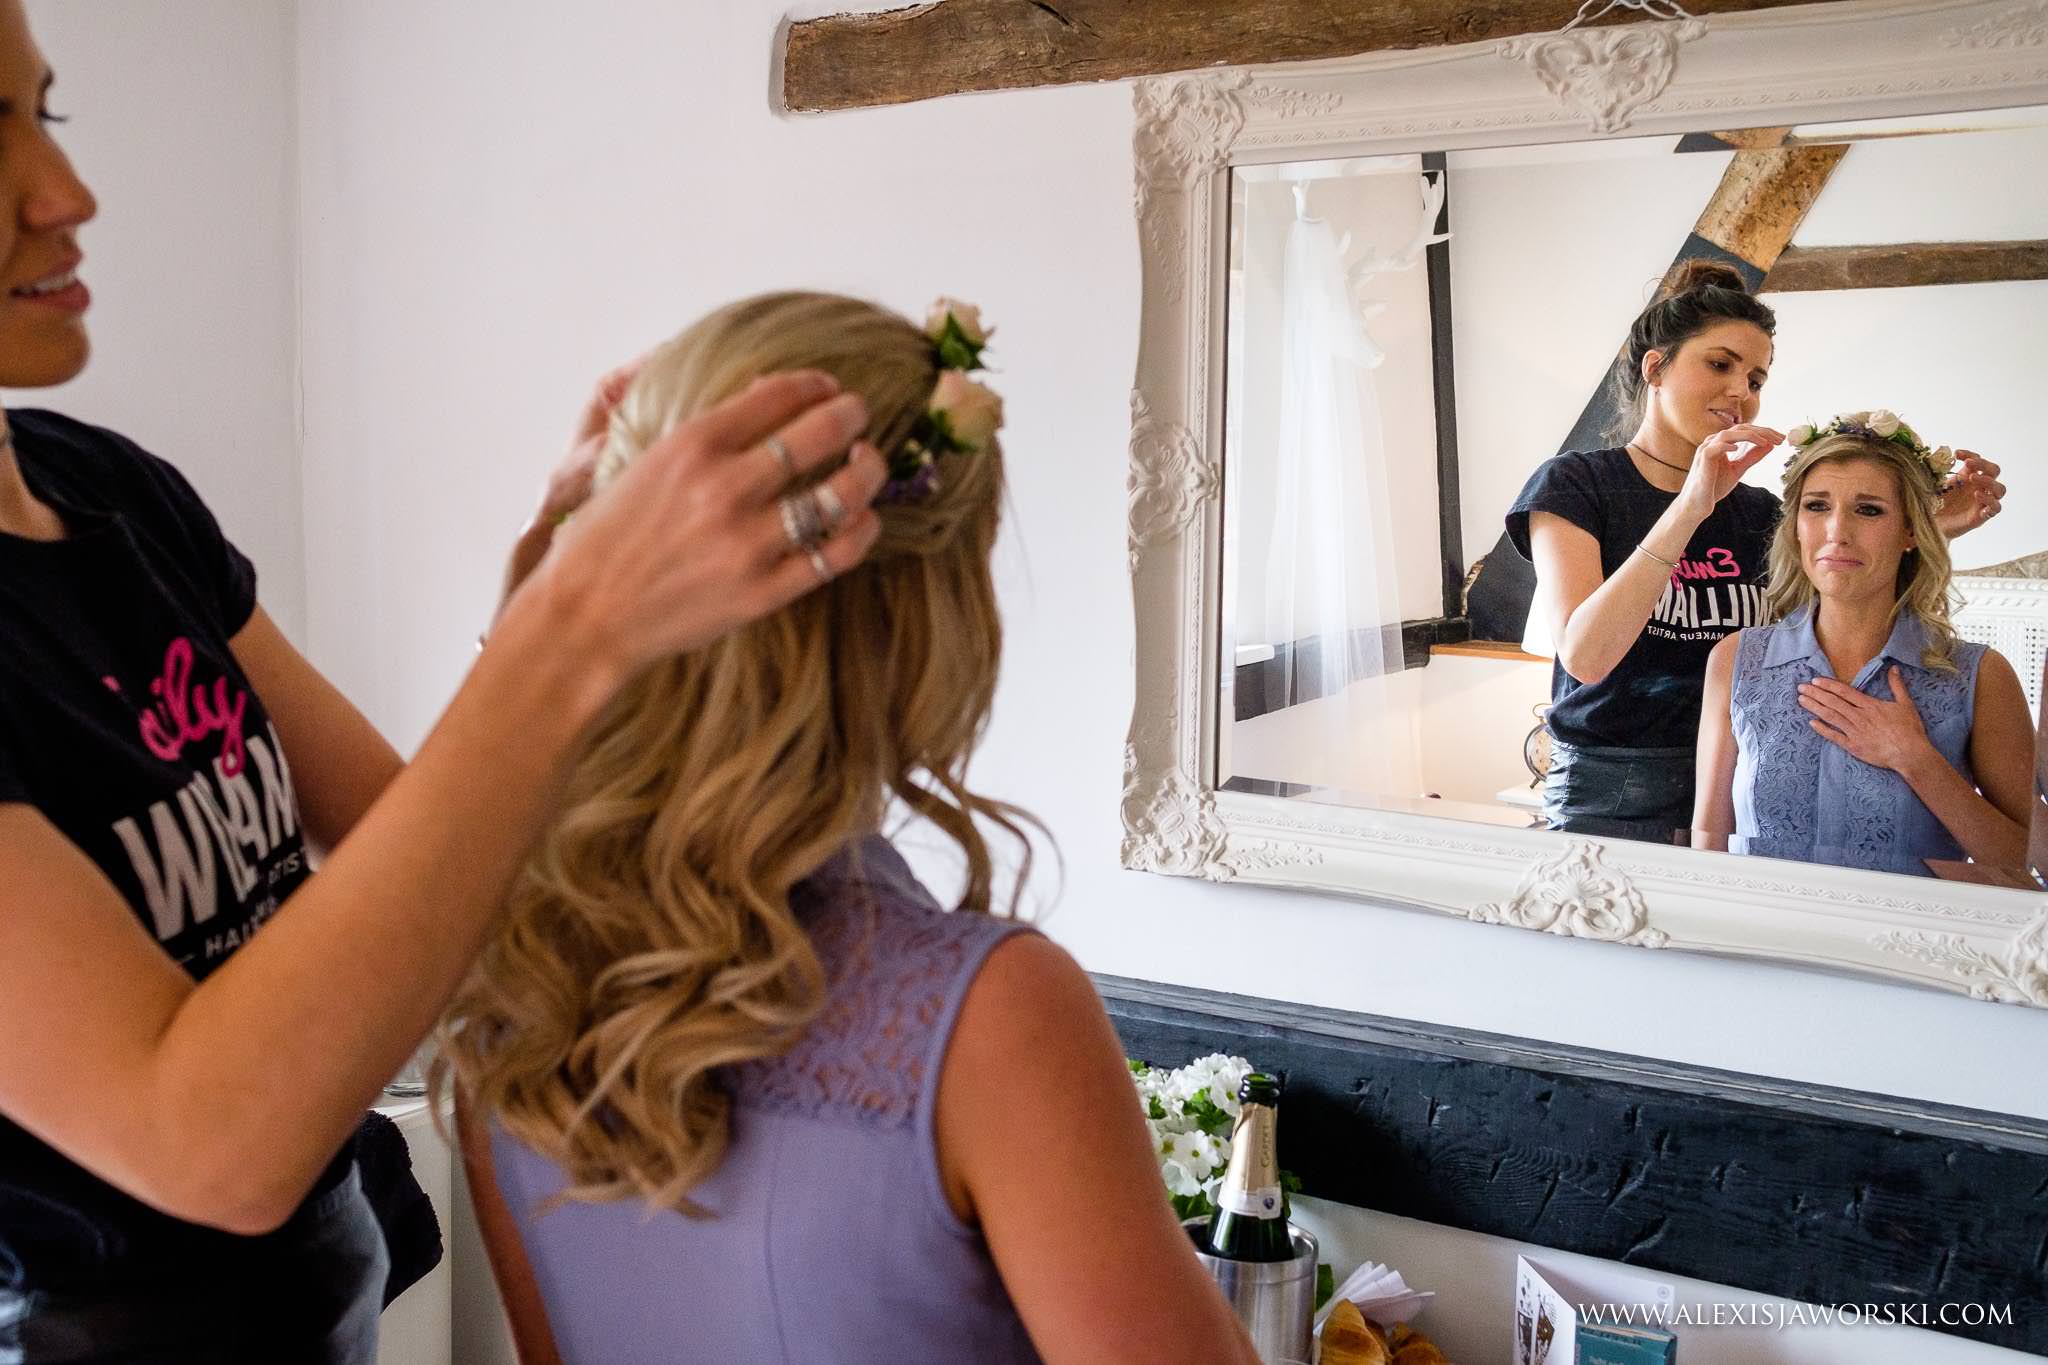 bride looking into mirror